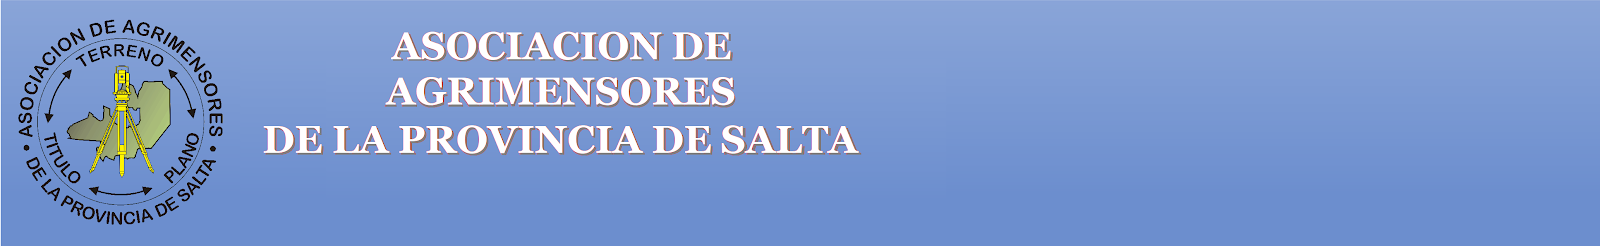 Asociación de Agrimensores de la Provincia de Salta